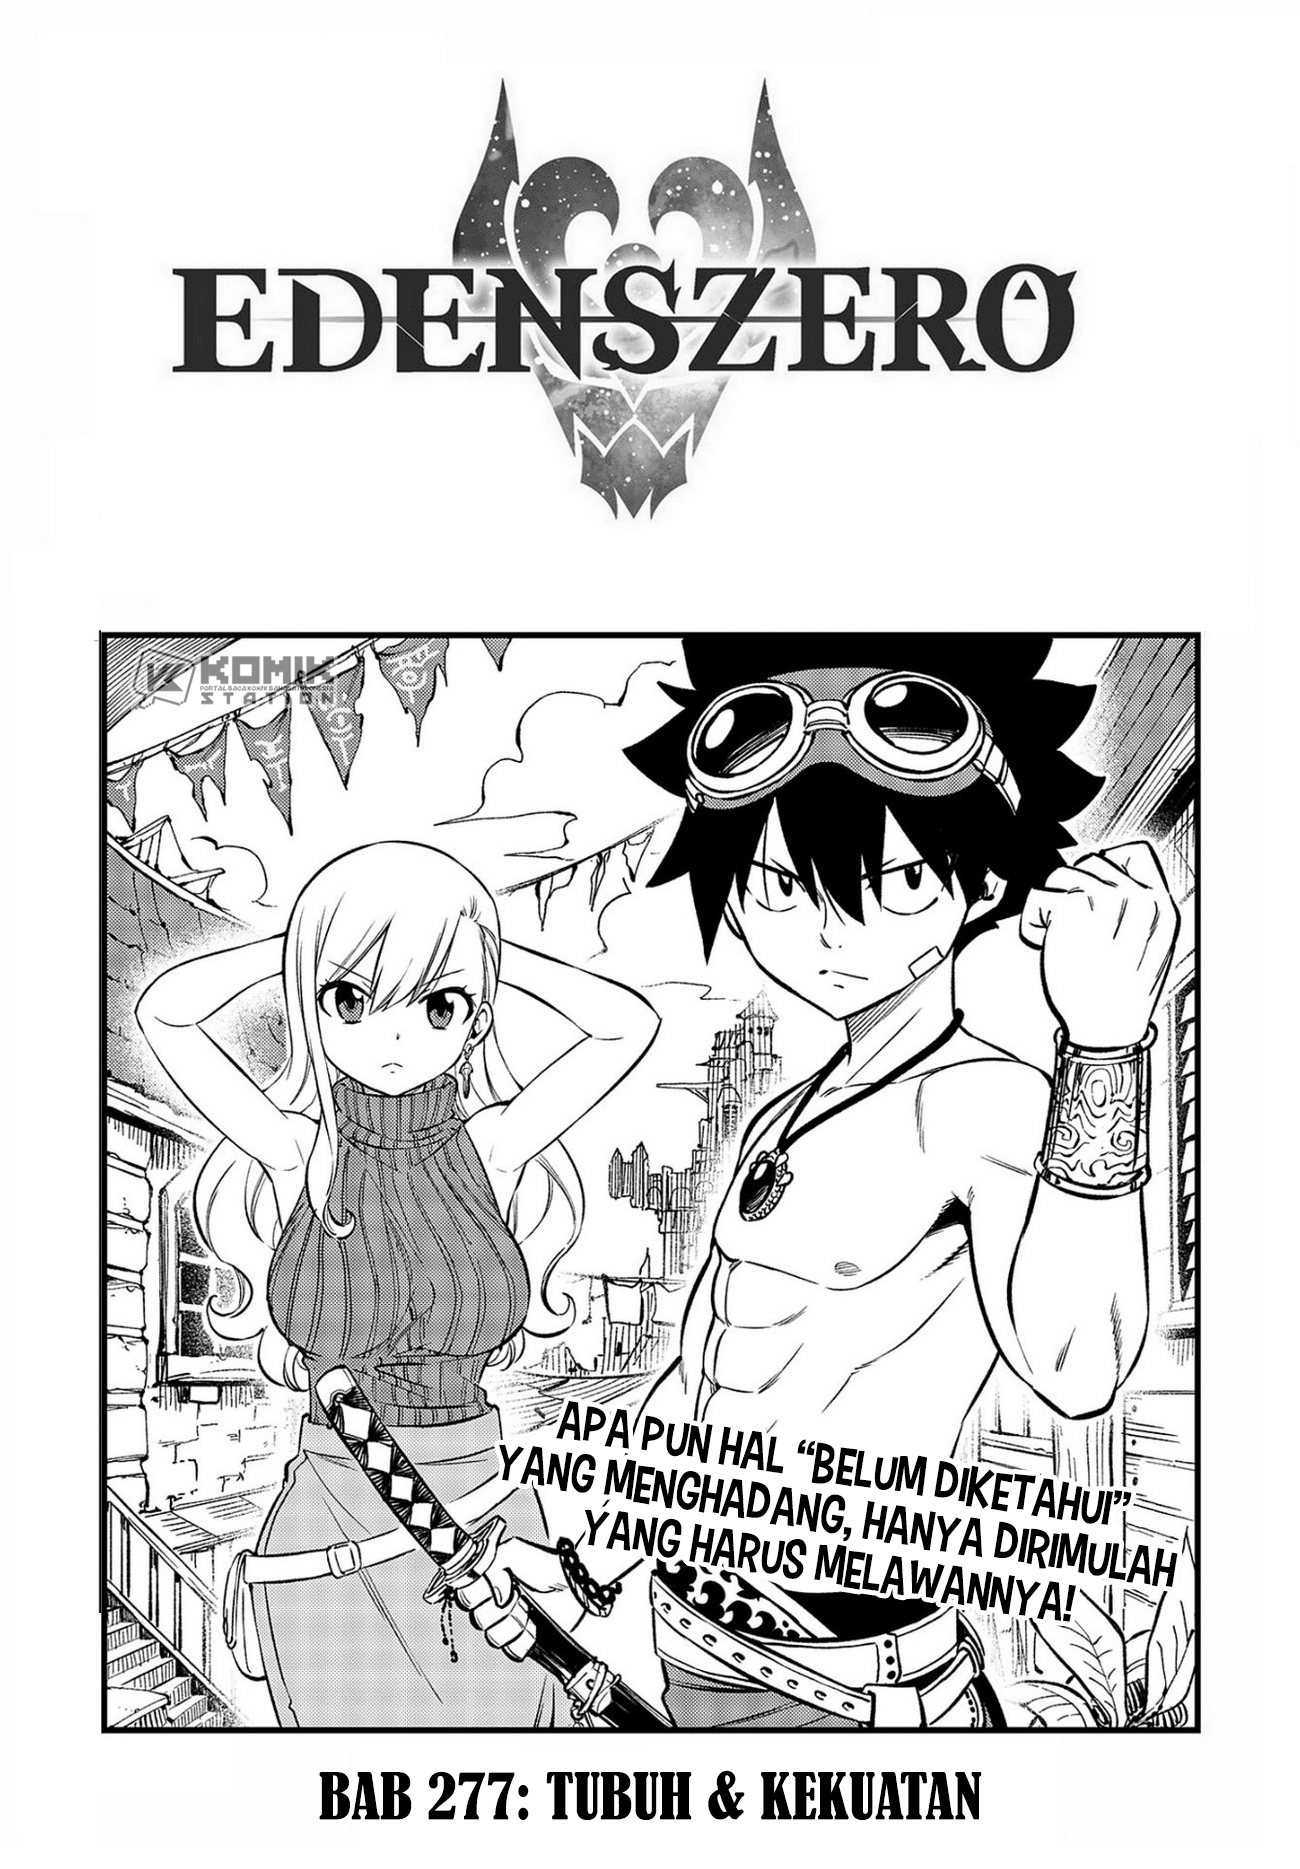 Eden’s Zero Chapter 227